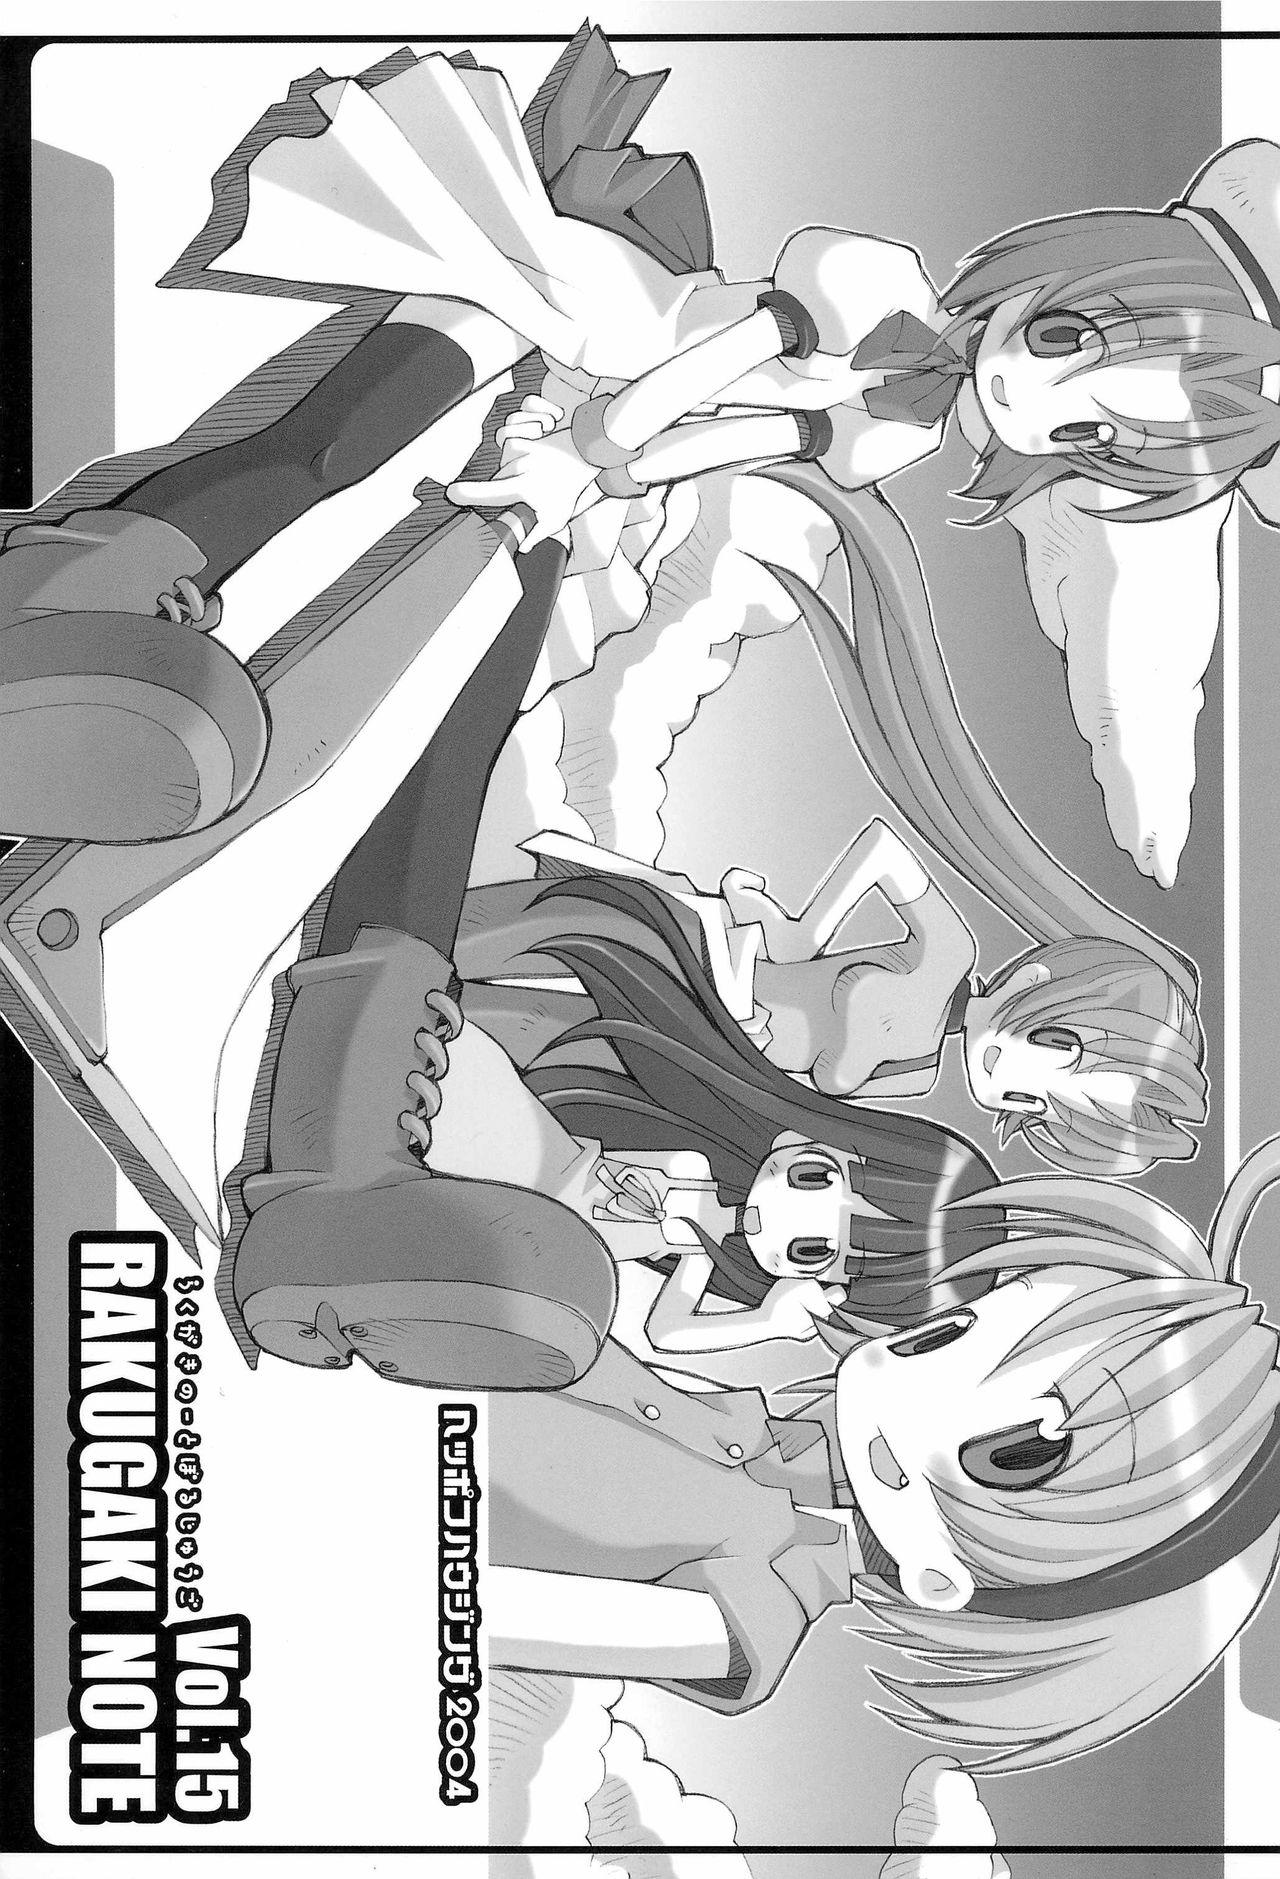 Teenager RAKUGAKI NOTE vol.15 - Higurashi no naku koro ni Climax - Page 1